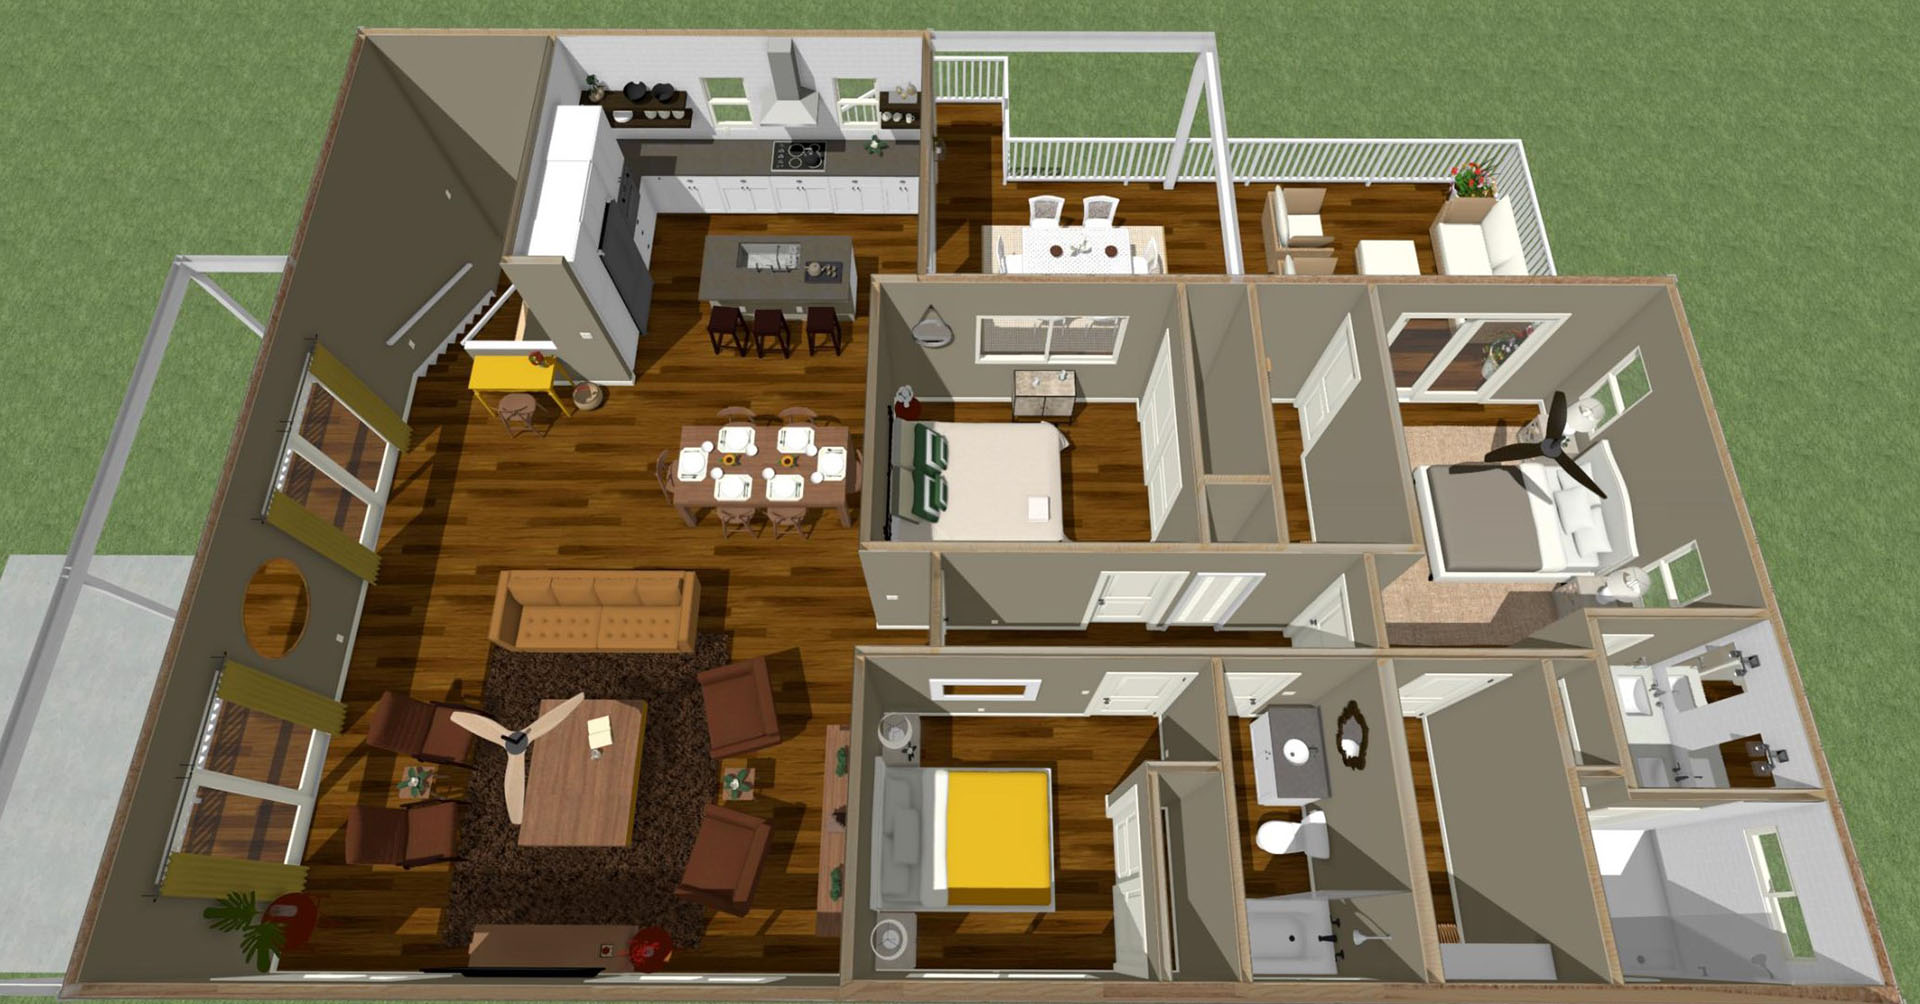 Nohona floor plan overview of main dwelling 2nd floor